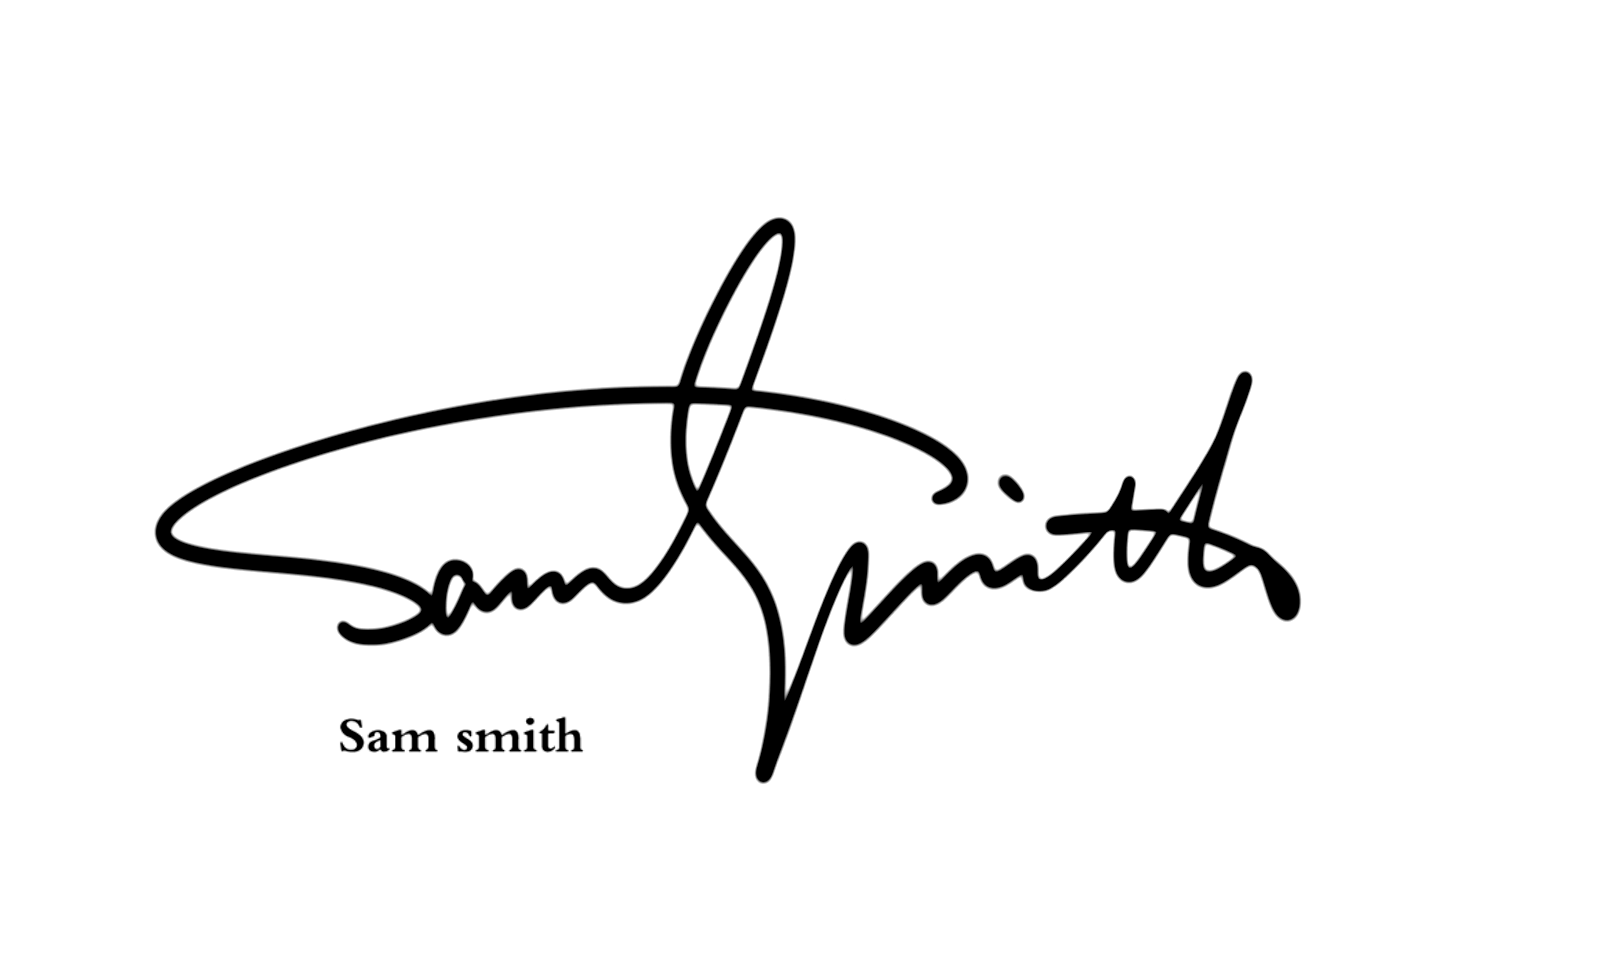 英文签名丨signature logo丨英文手写标志设计